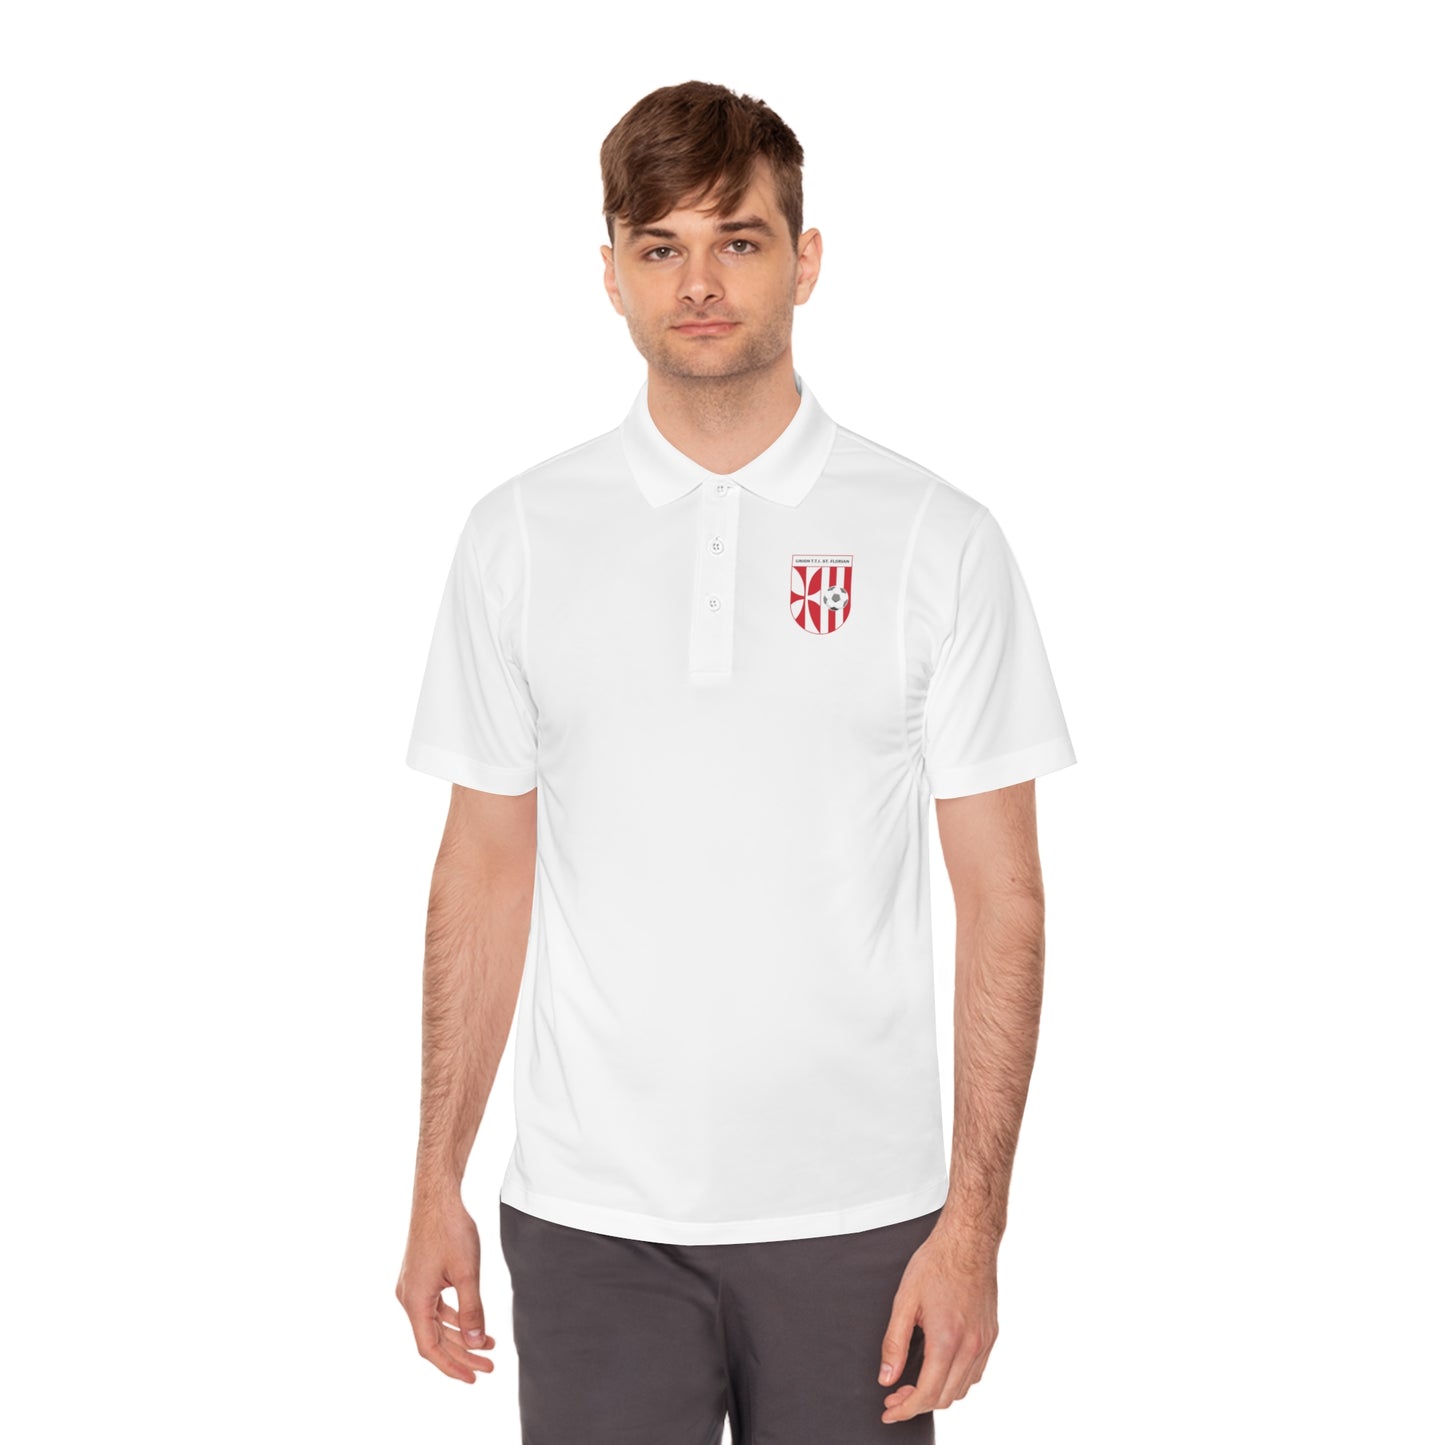 Union T.T.I. Sankt Florian Men's Sport Polo Shirt